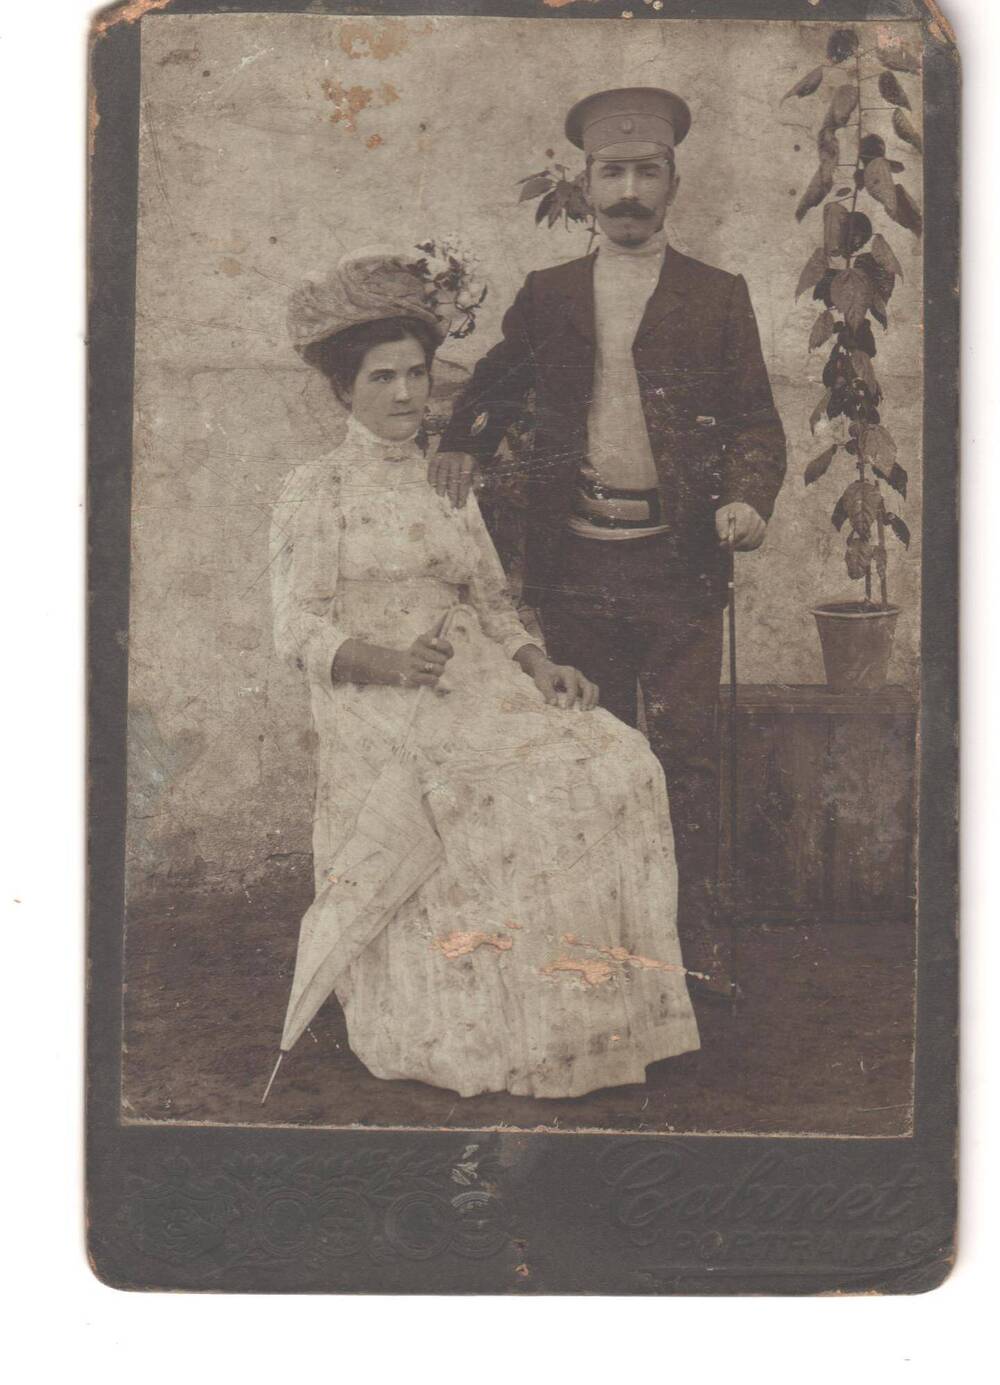 Фотография черно-белая в паспарту. Автор не известен. Алексей Григорьевич Ноздровский со спутницей. Не позднее 1917 г.